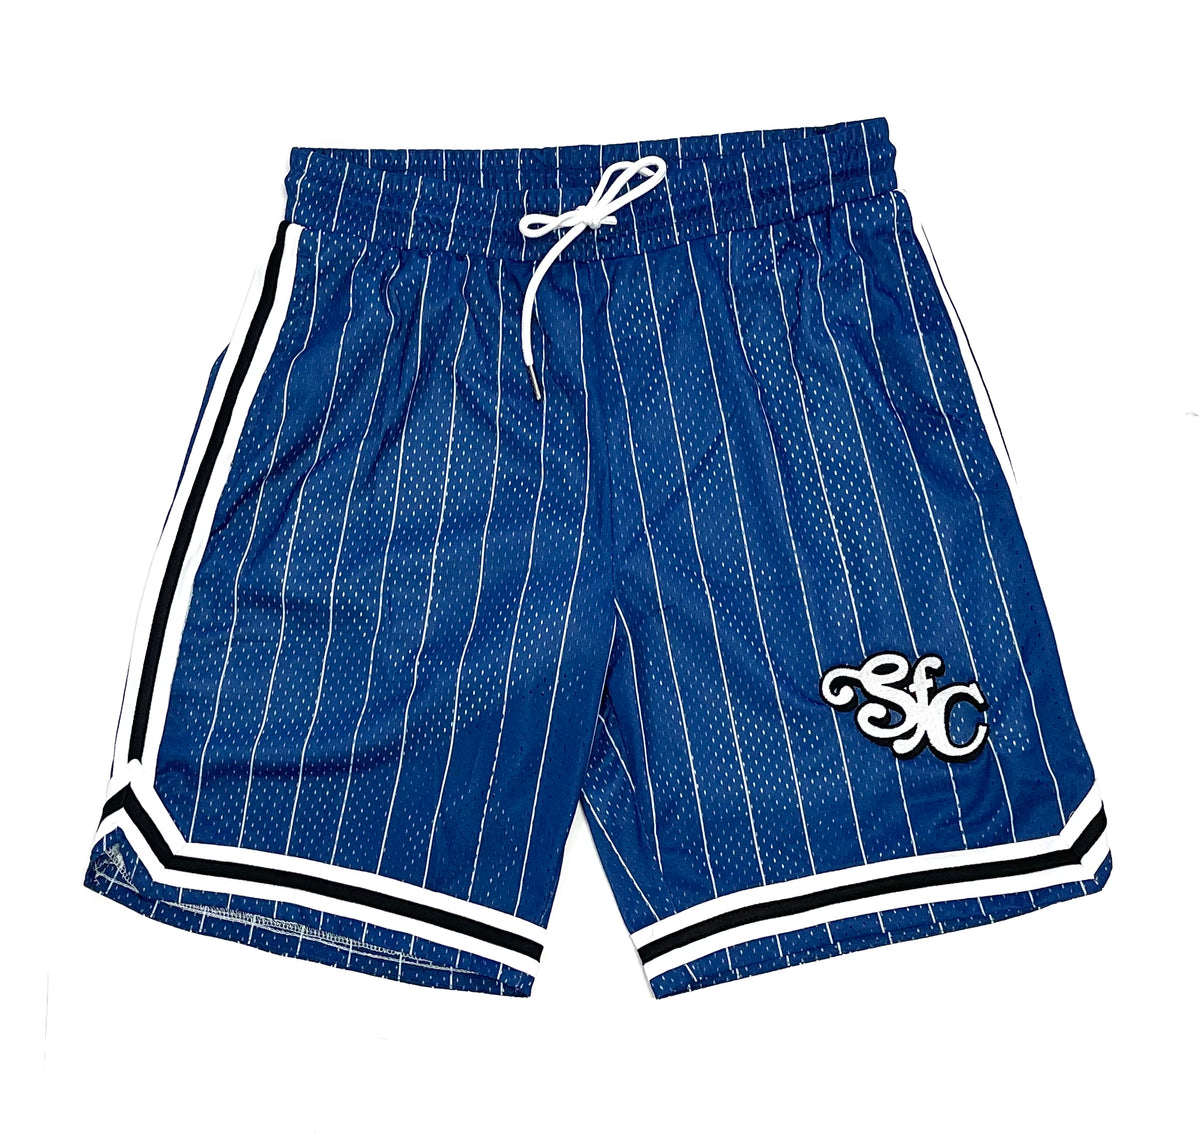 SFC “LUXURY” MESH SHORTS (BLUE PINSTRIPE) – So Fresh Clothing